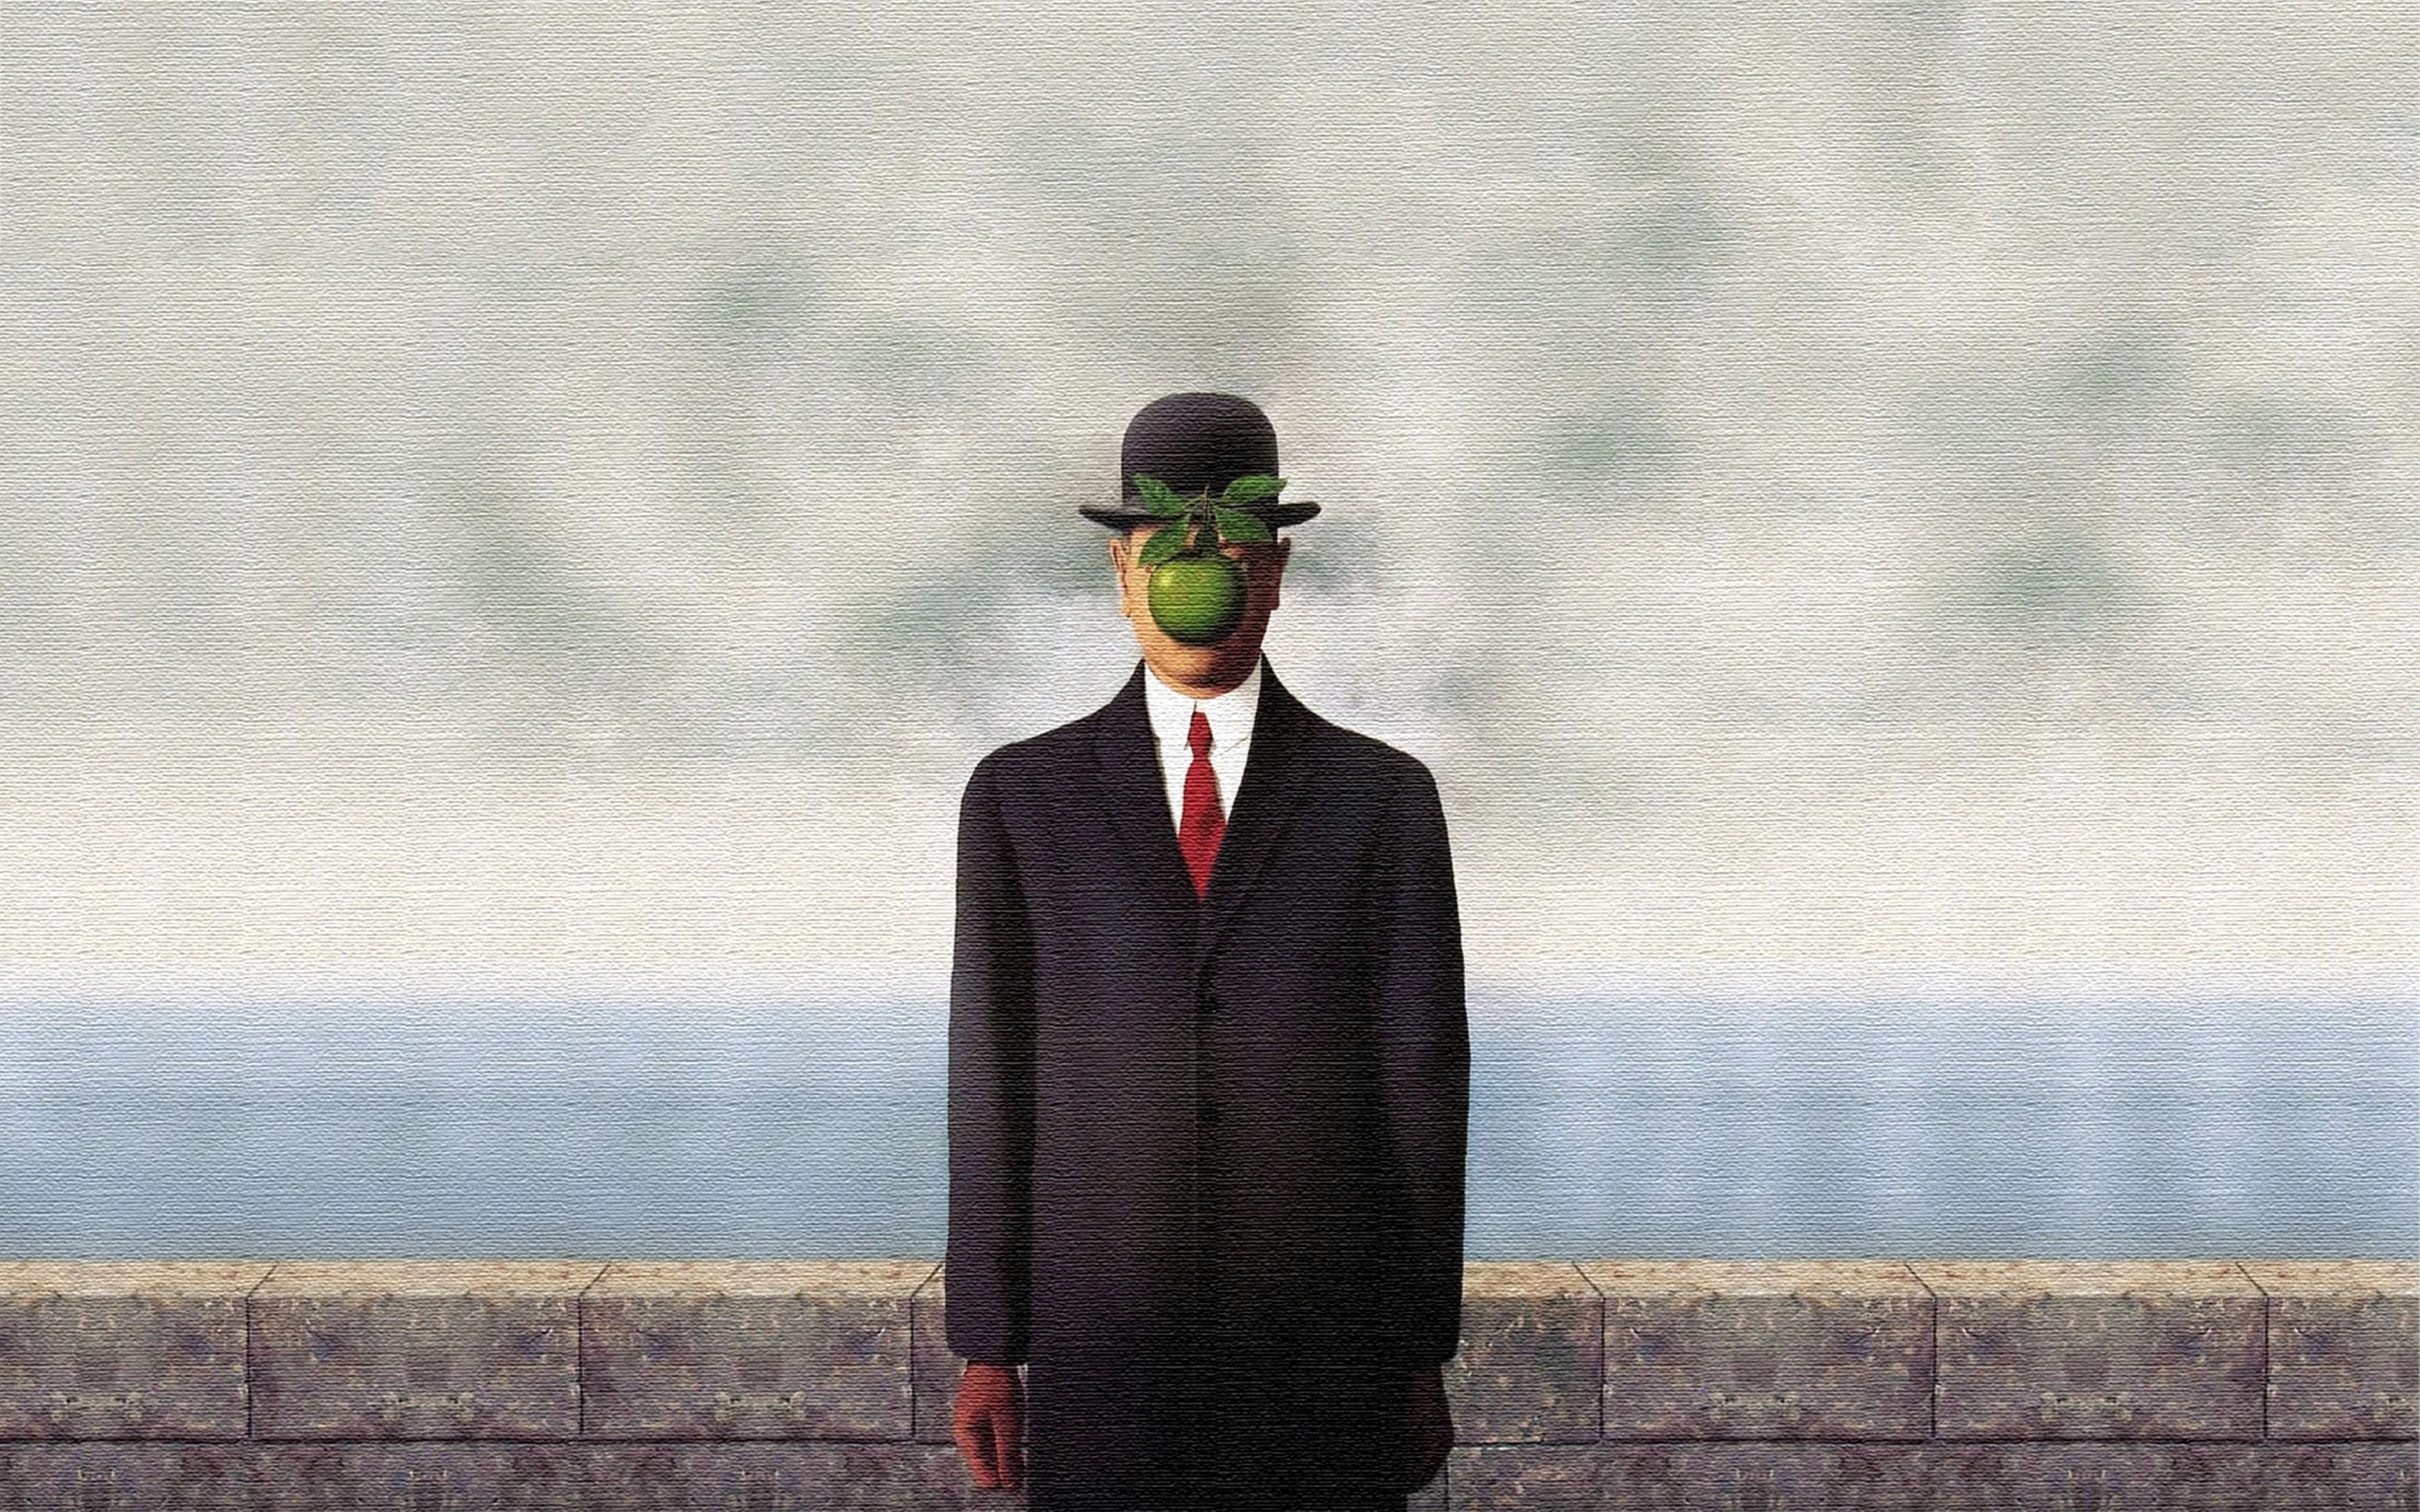 Rene Magritte Son Of Man wallpaper 247033